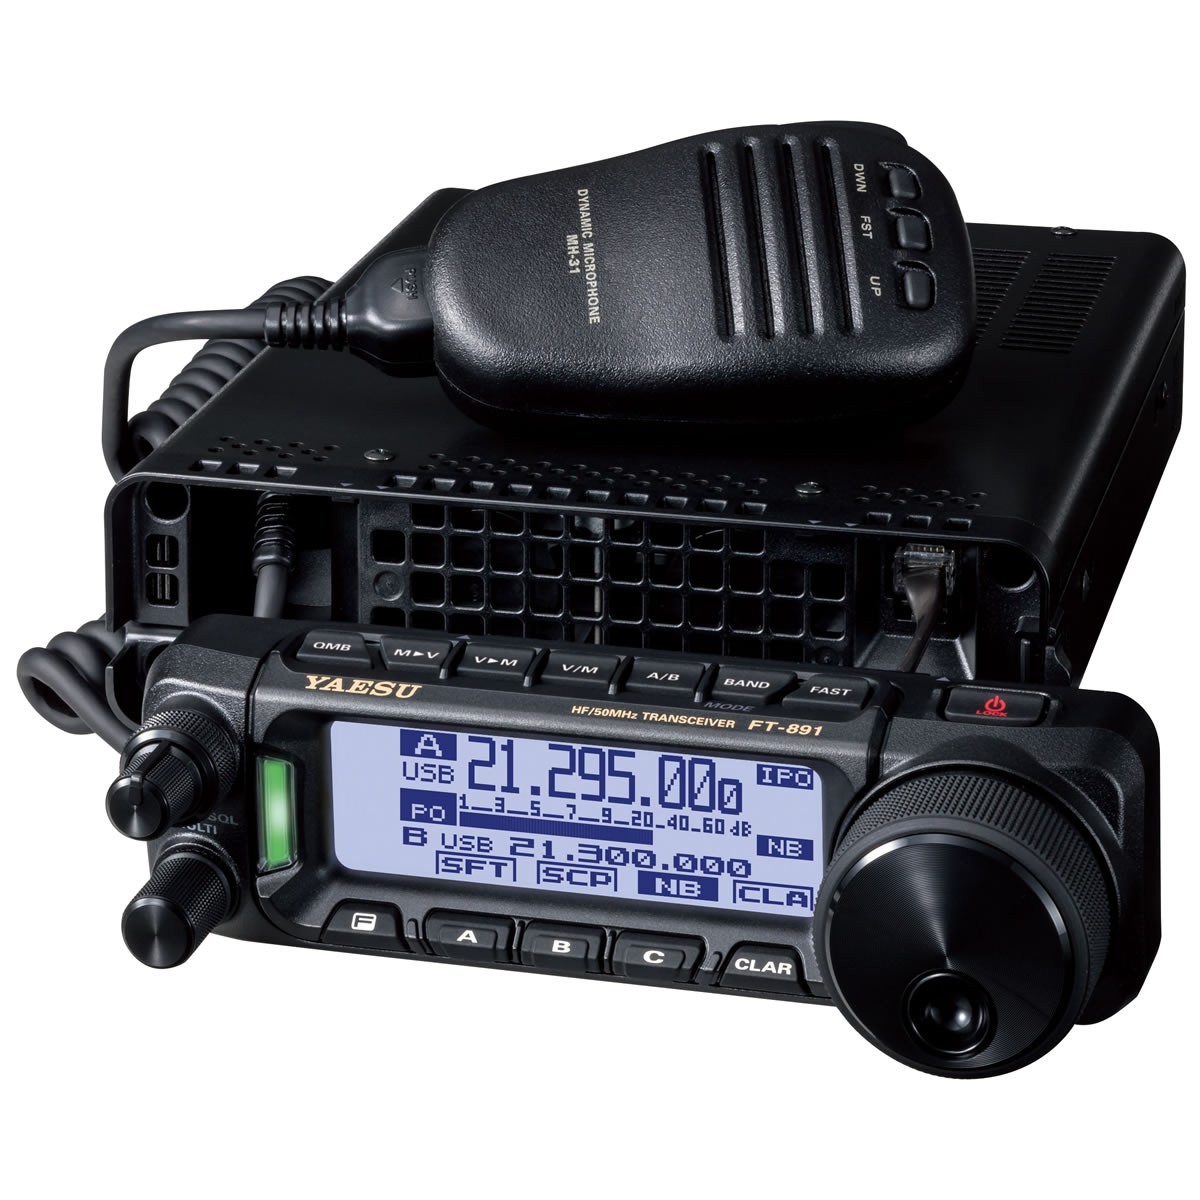  радиолюбительская связь FT-891M Yaesu беспроводной HF/50M Hz диапазон all mode приемопередатчик 50W